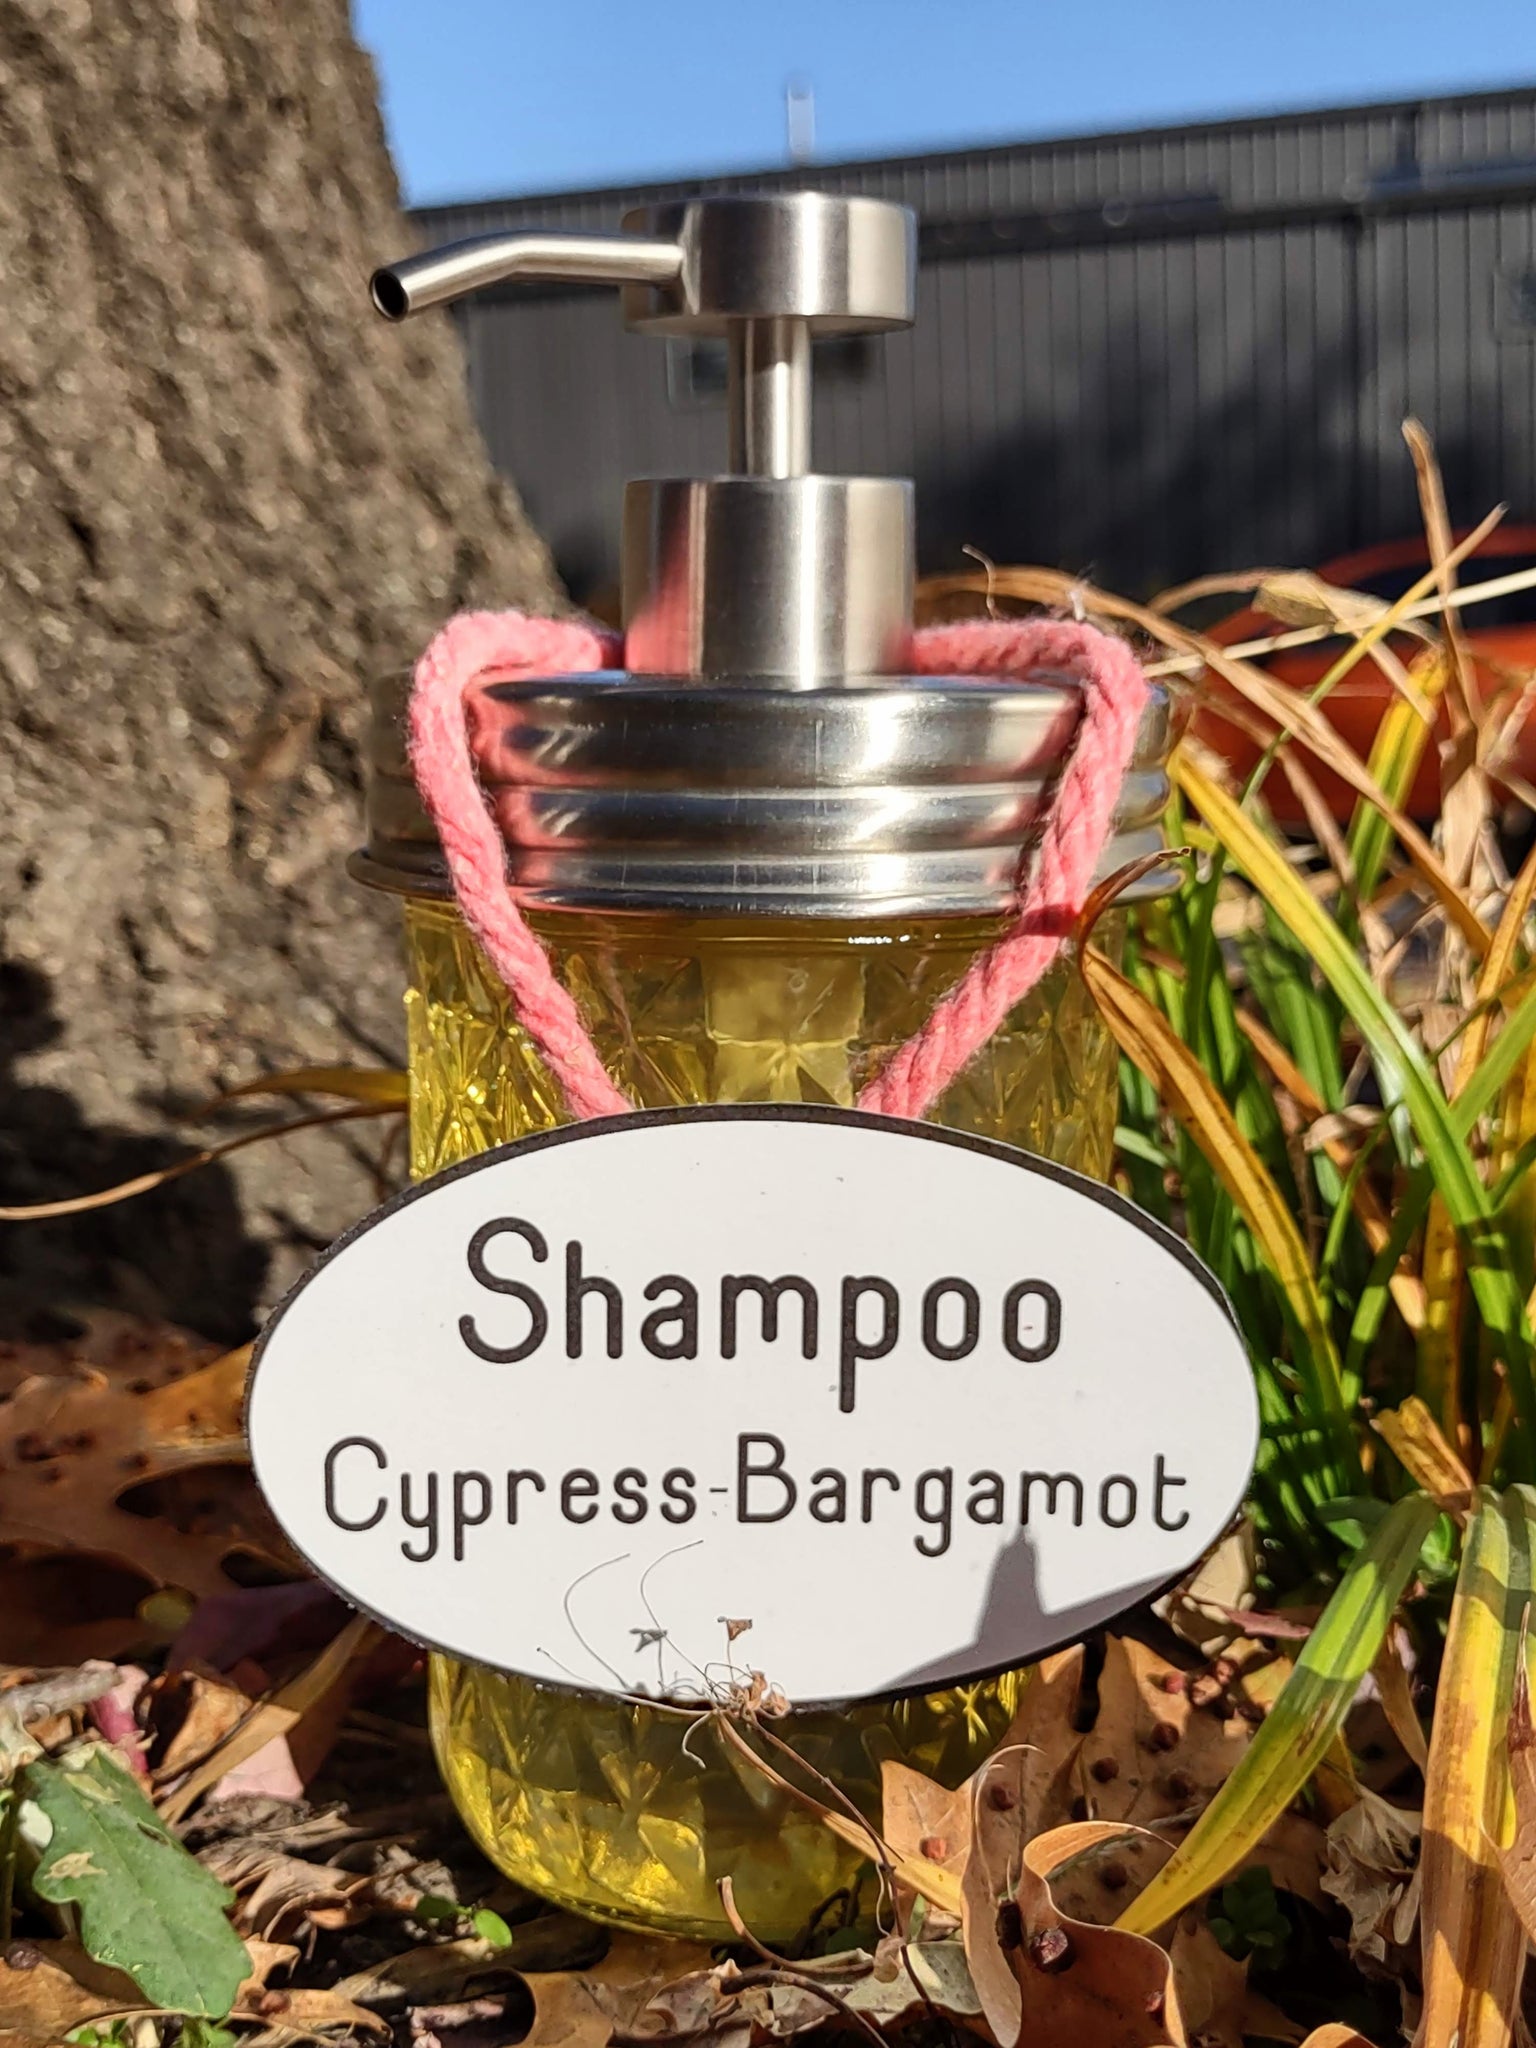 Shampoo Cypress-Bargamot